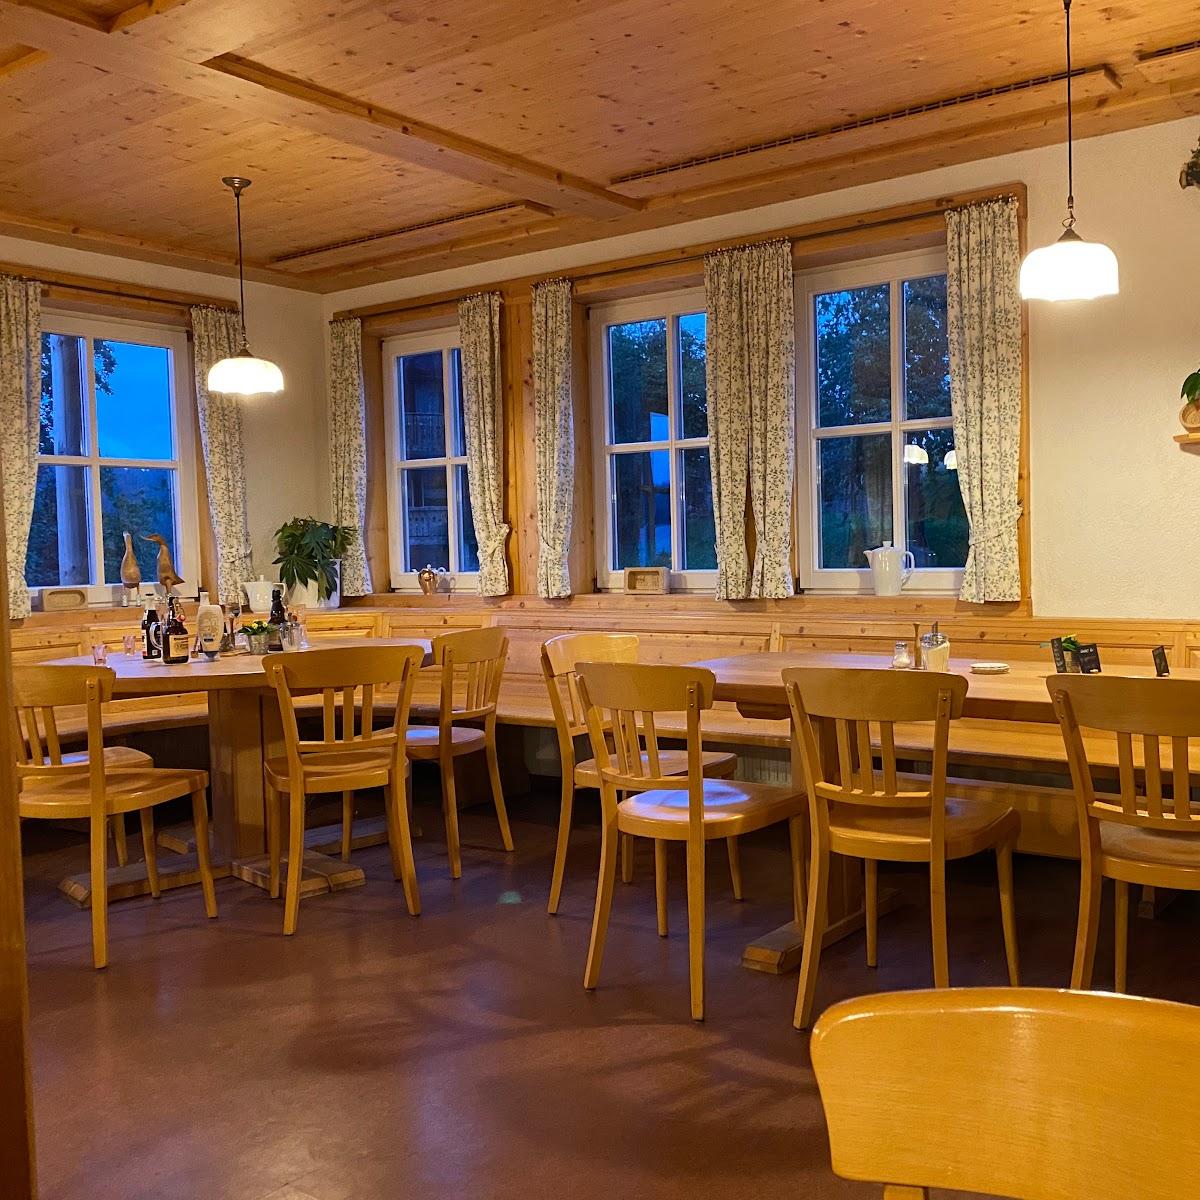 Restaurant "Gasthaus zum Strauß" in Breitnau